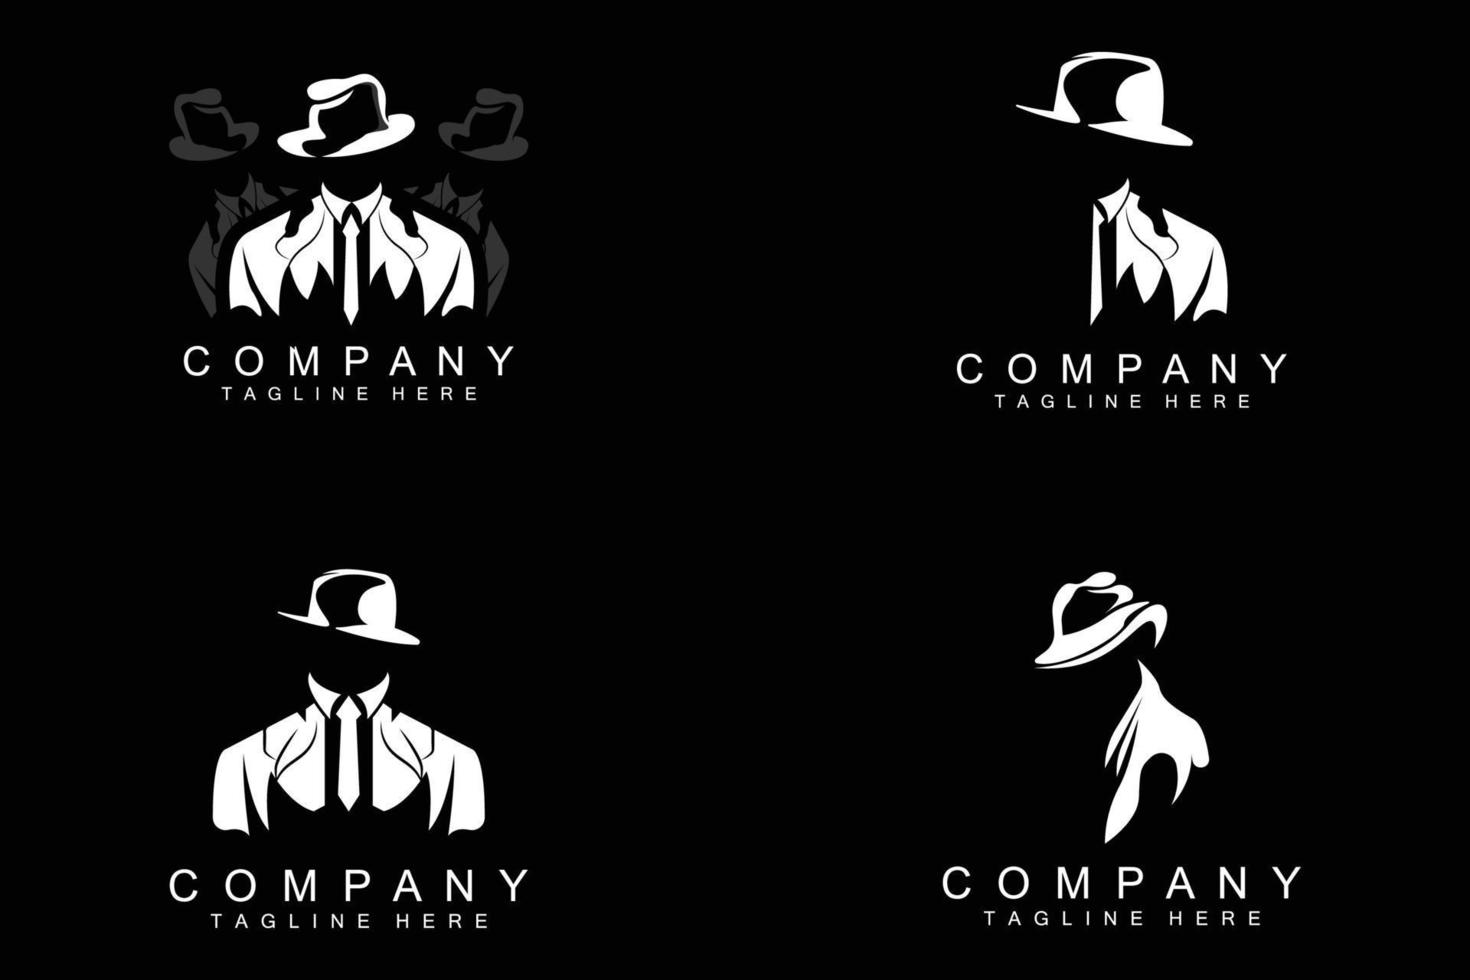 detektiv- man logotyp design, maffia detektiv- mode smoking och hatt illustration vektor, svart man affärsman ikon vektor